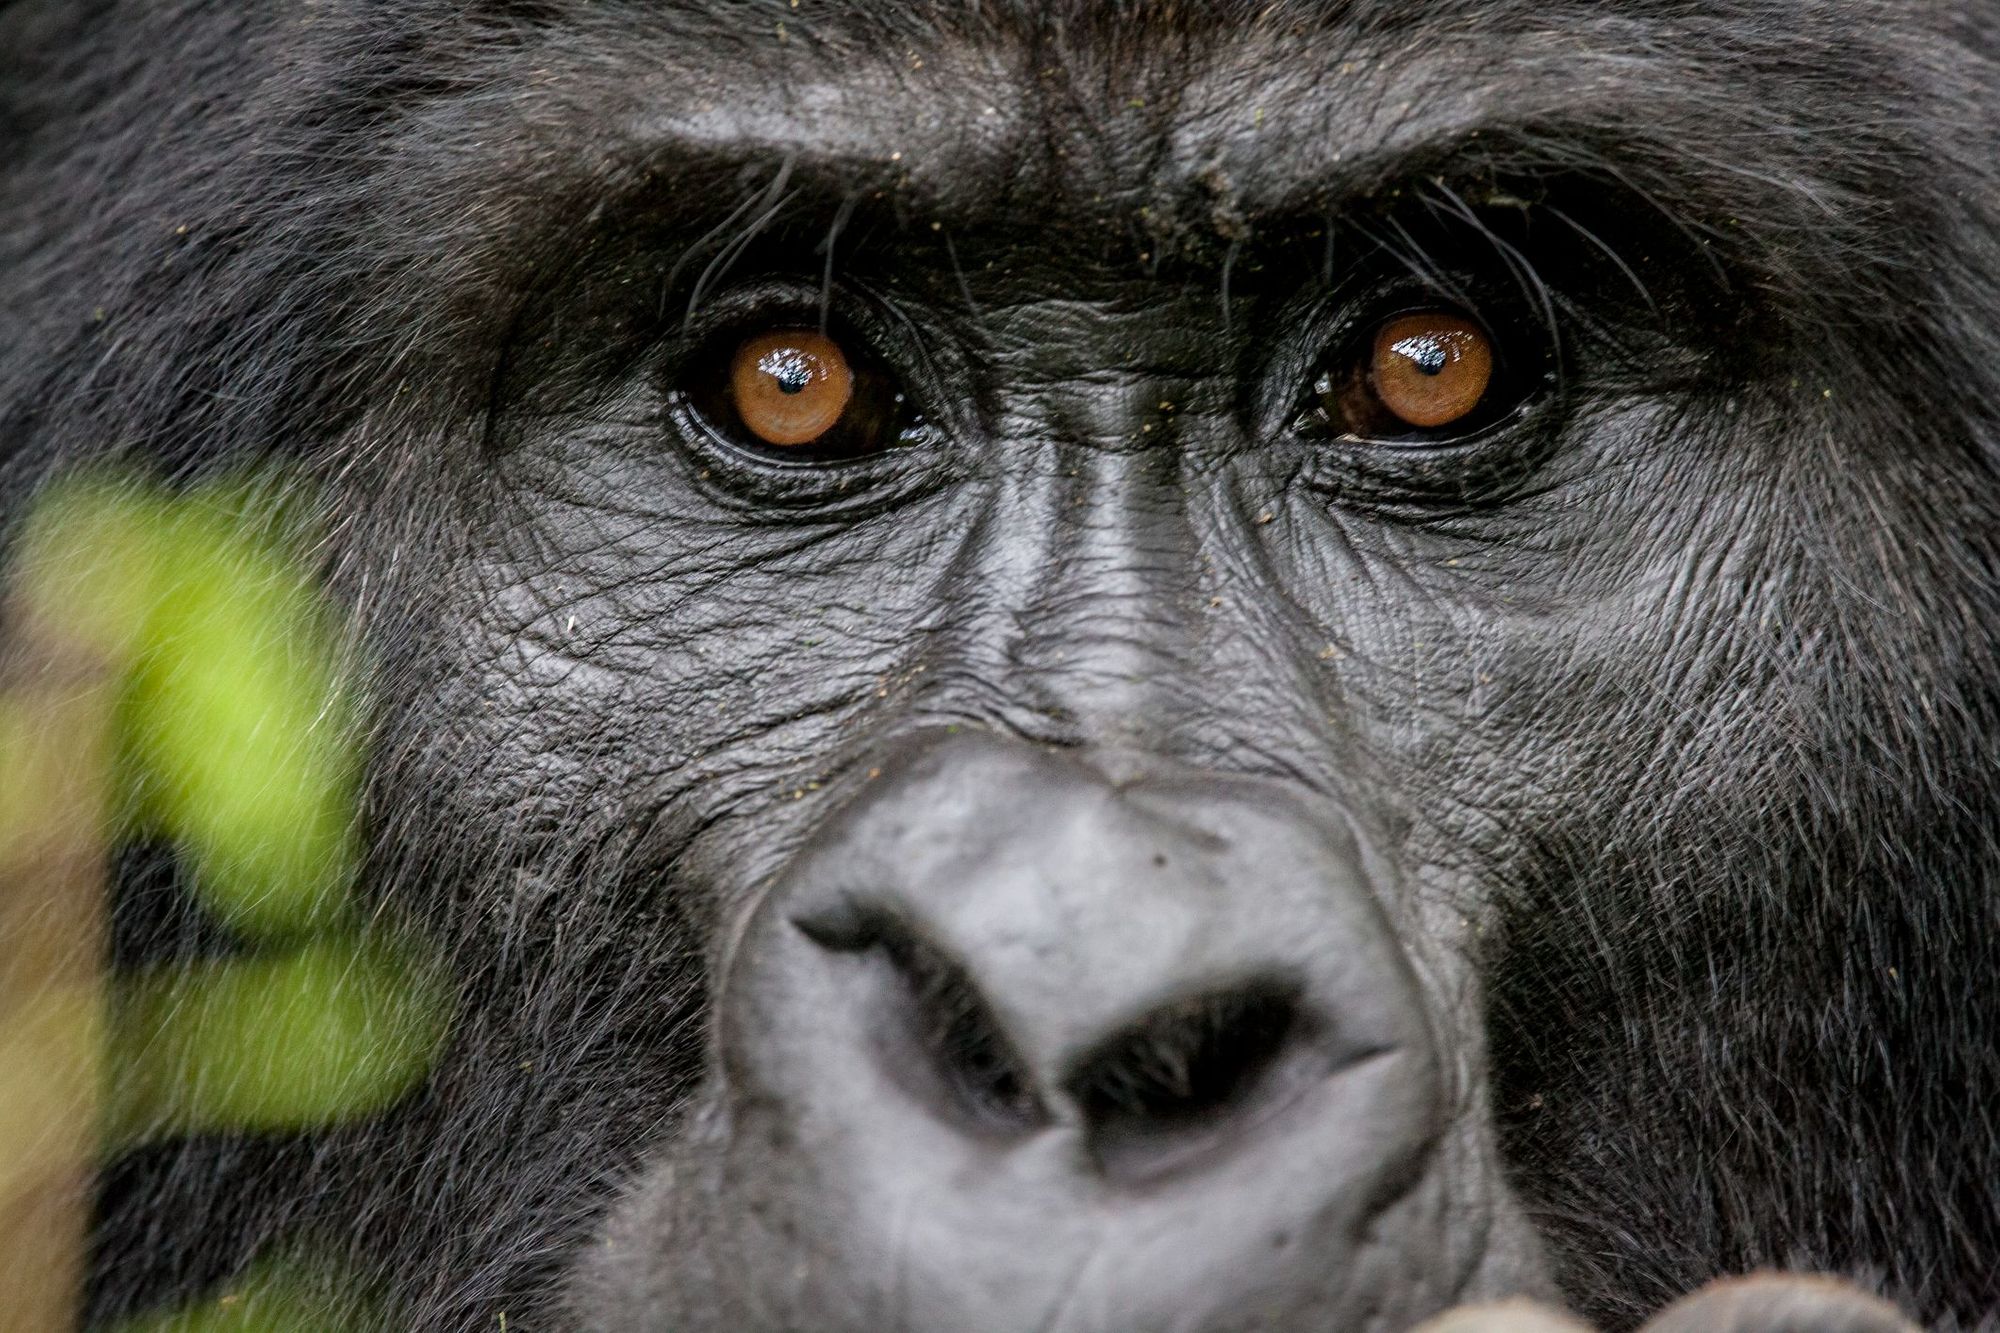 Close up of a silverback mountain gorilla.